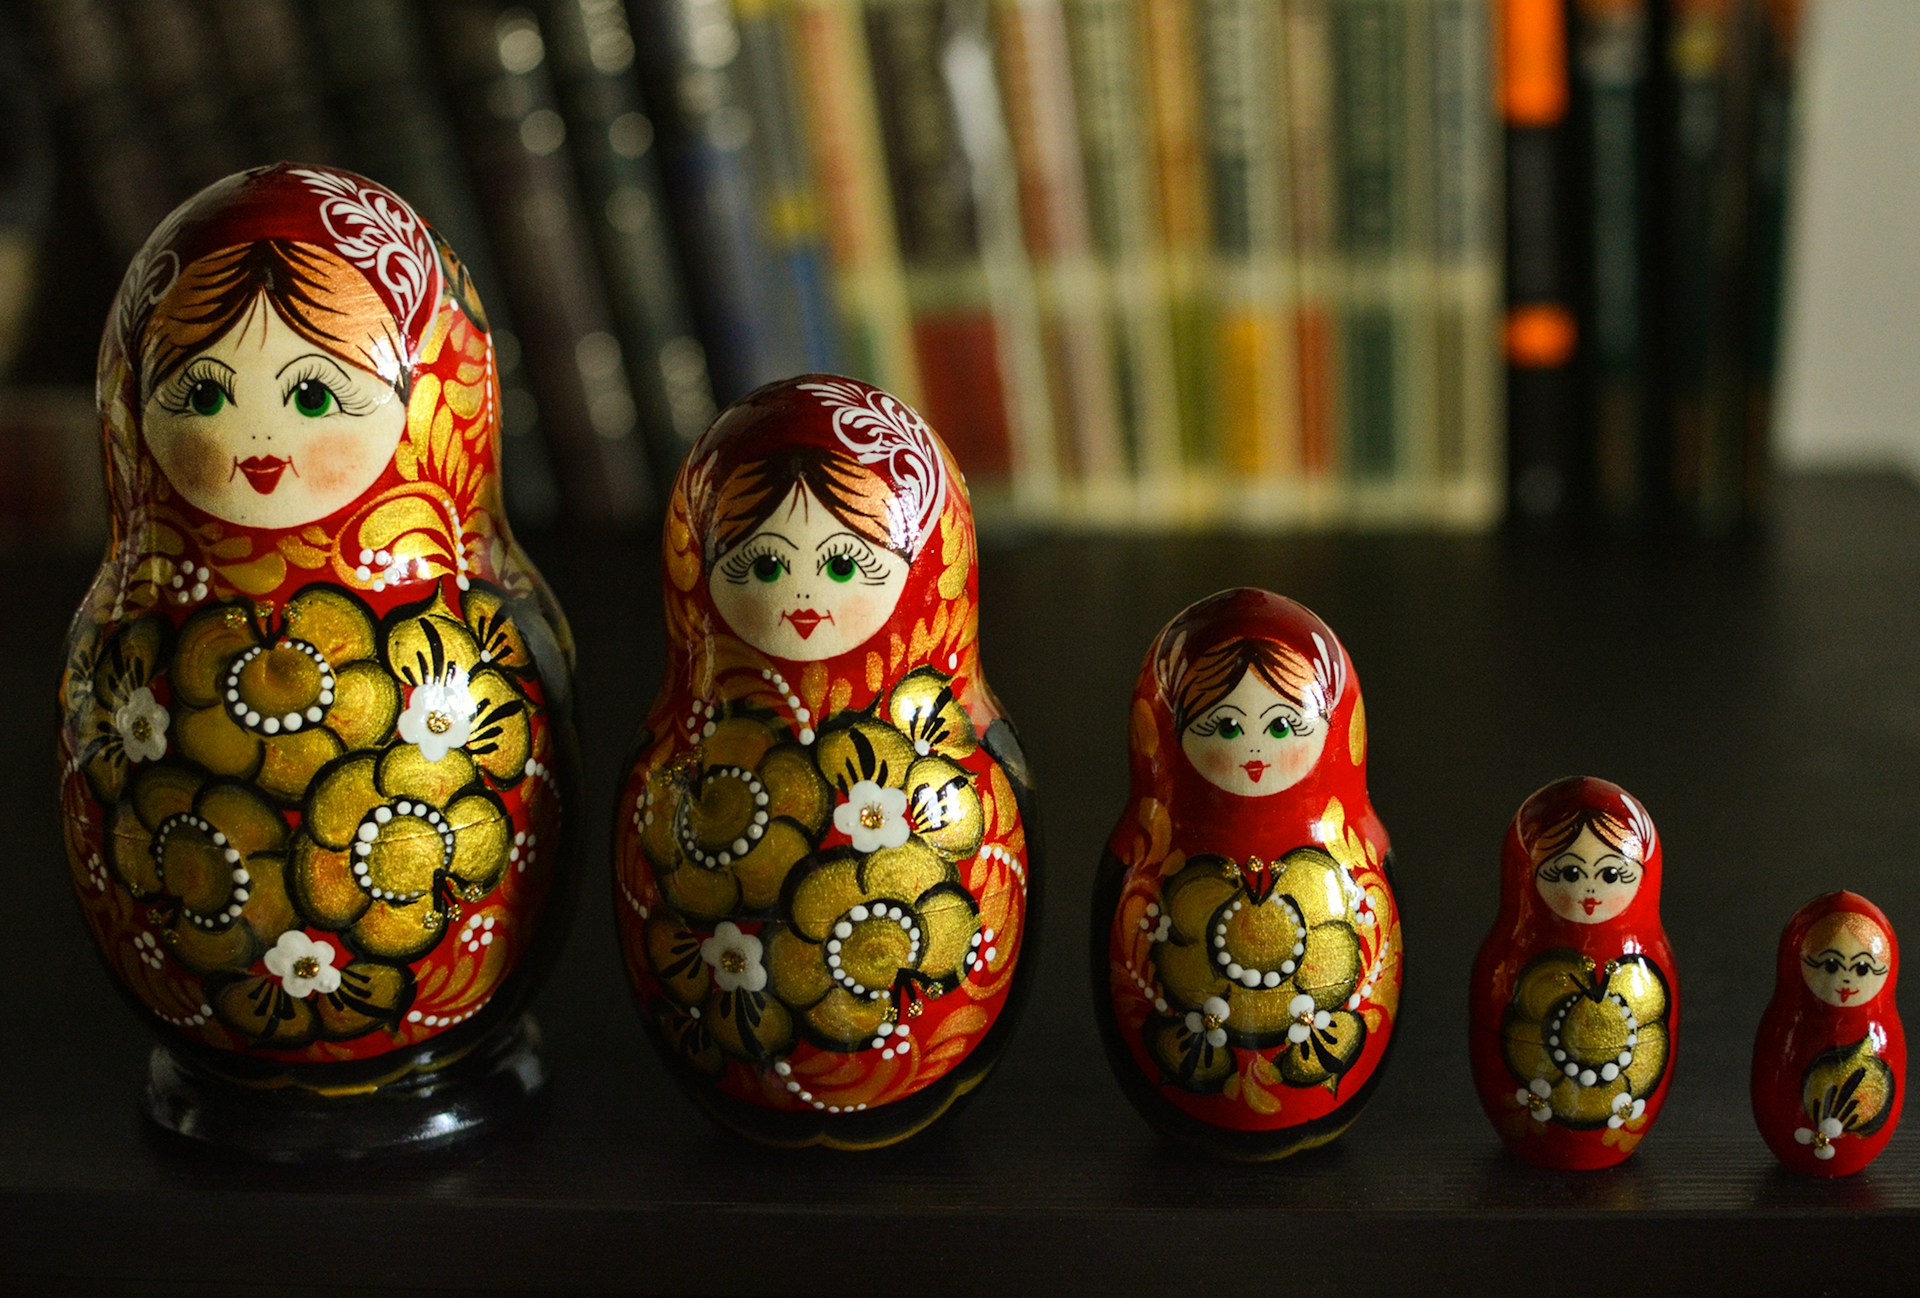 een reeks traditionele Russische Matroesjka-poppen, variërend in grootte van groot naar klein, met kleurrijke bloemmotieven en gedetailleerde gezichten. Op de achtergrond zijn boeken zichtbaar.